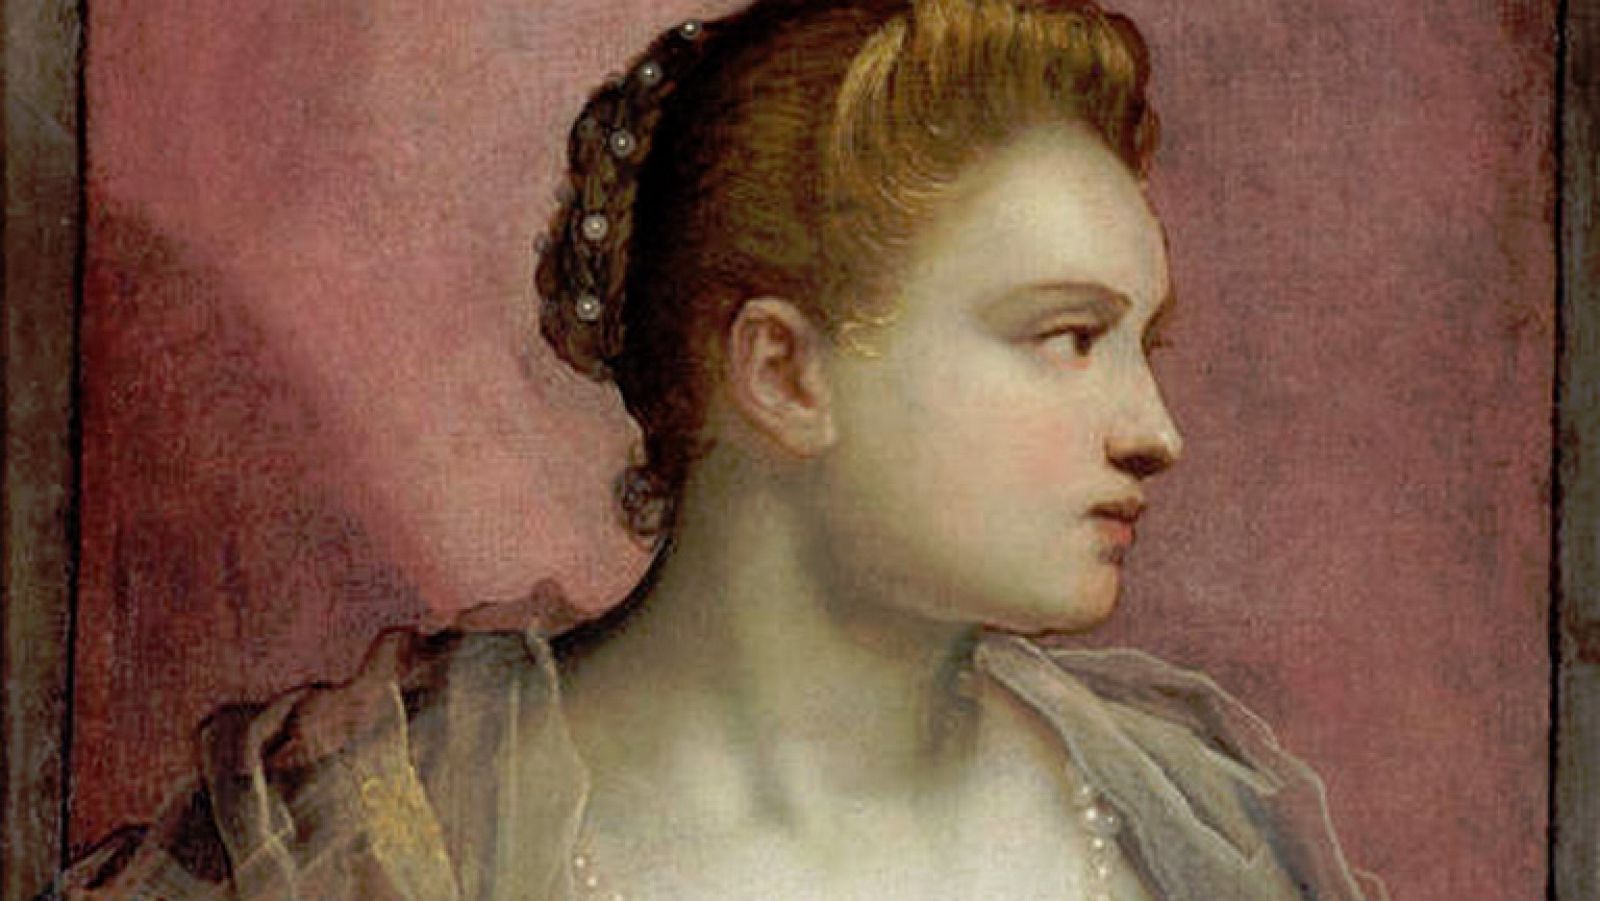 Mirar un cuadro - La dama que descubre el seno (Tintoretto)